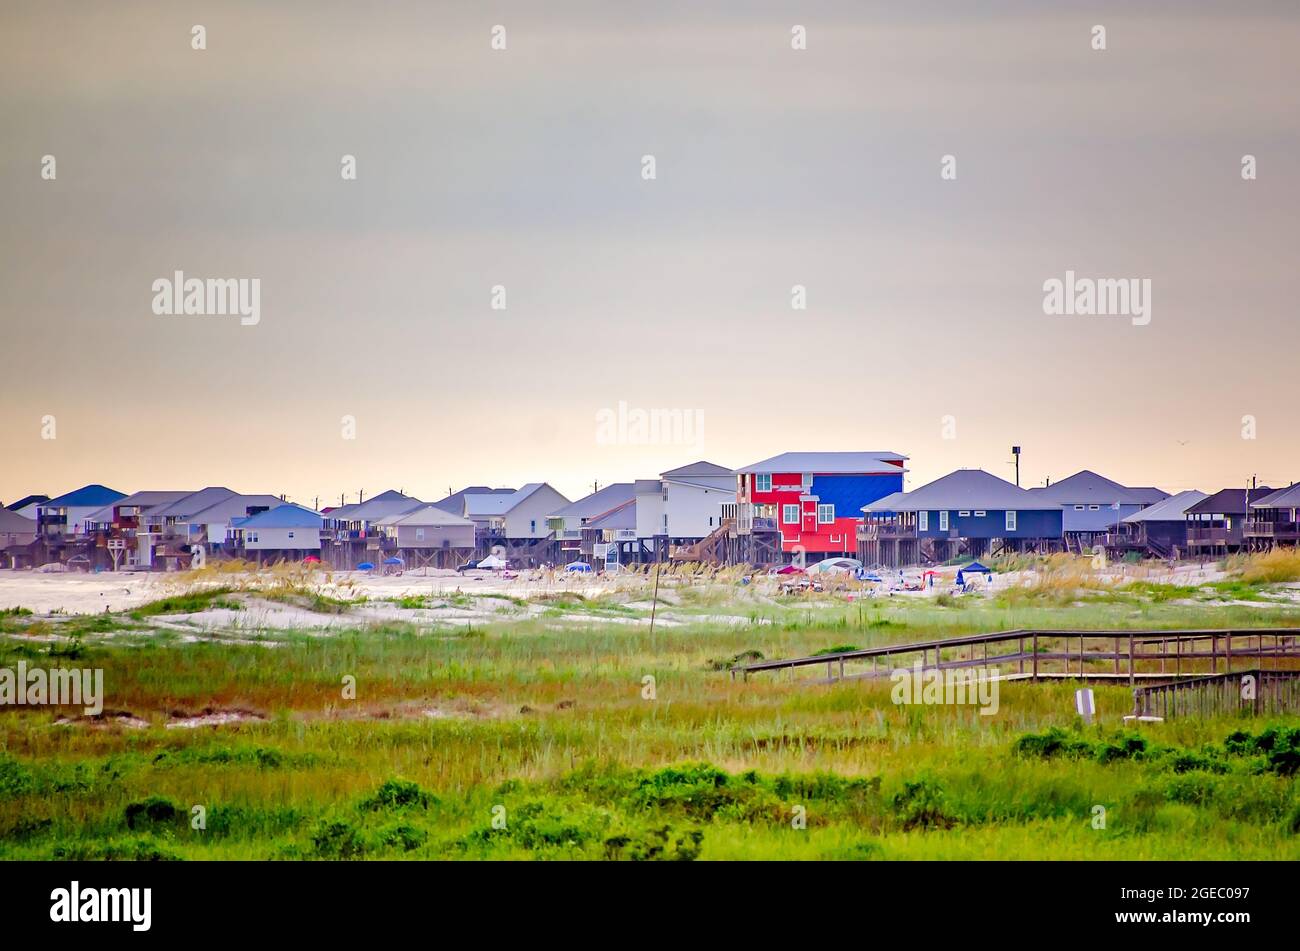 Les maisons de plage sont bondées ensemble dans l’extrémité ouest de Dauphin Island, le 12 août 2021, à Dauphin Island, en Alabama. L'île est vulnérable aux changements climatiques. Banque D'Images